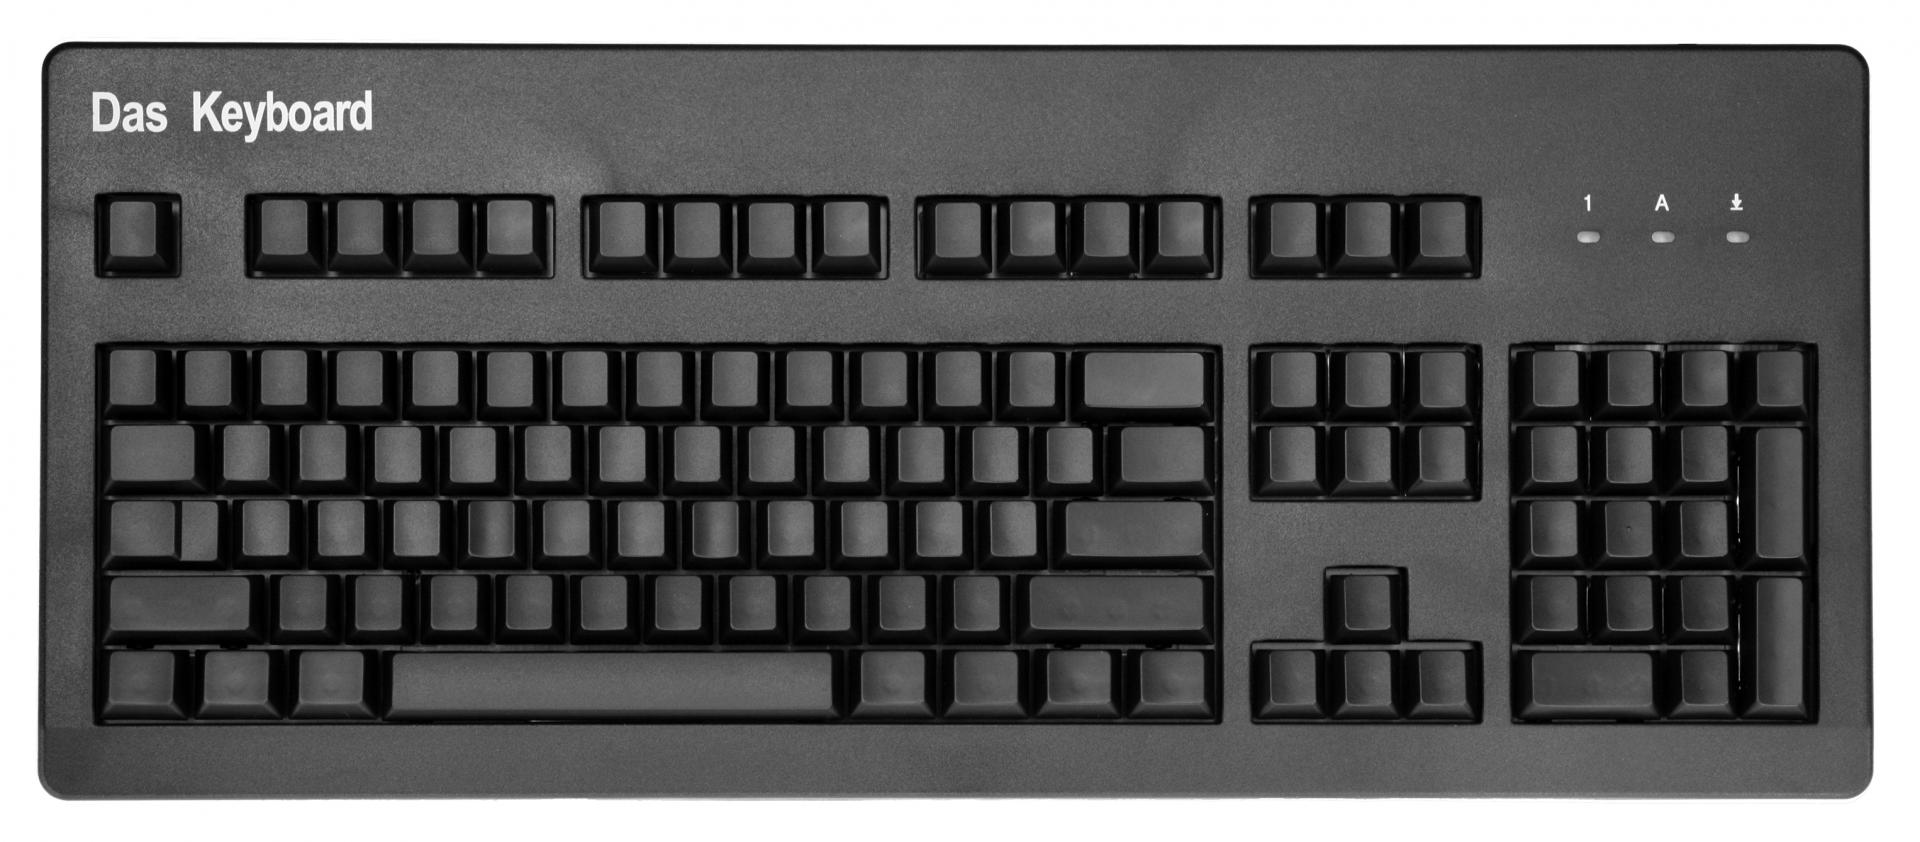 نام: das keyboard.jpg نمایش: 44 اندازه: 164.7 کیلو بایت